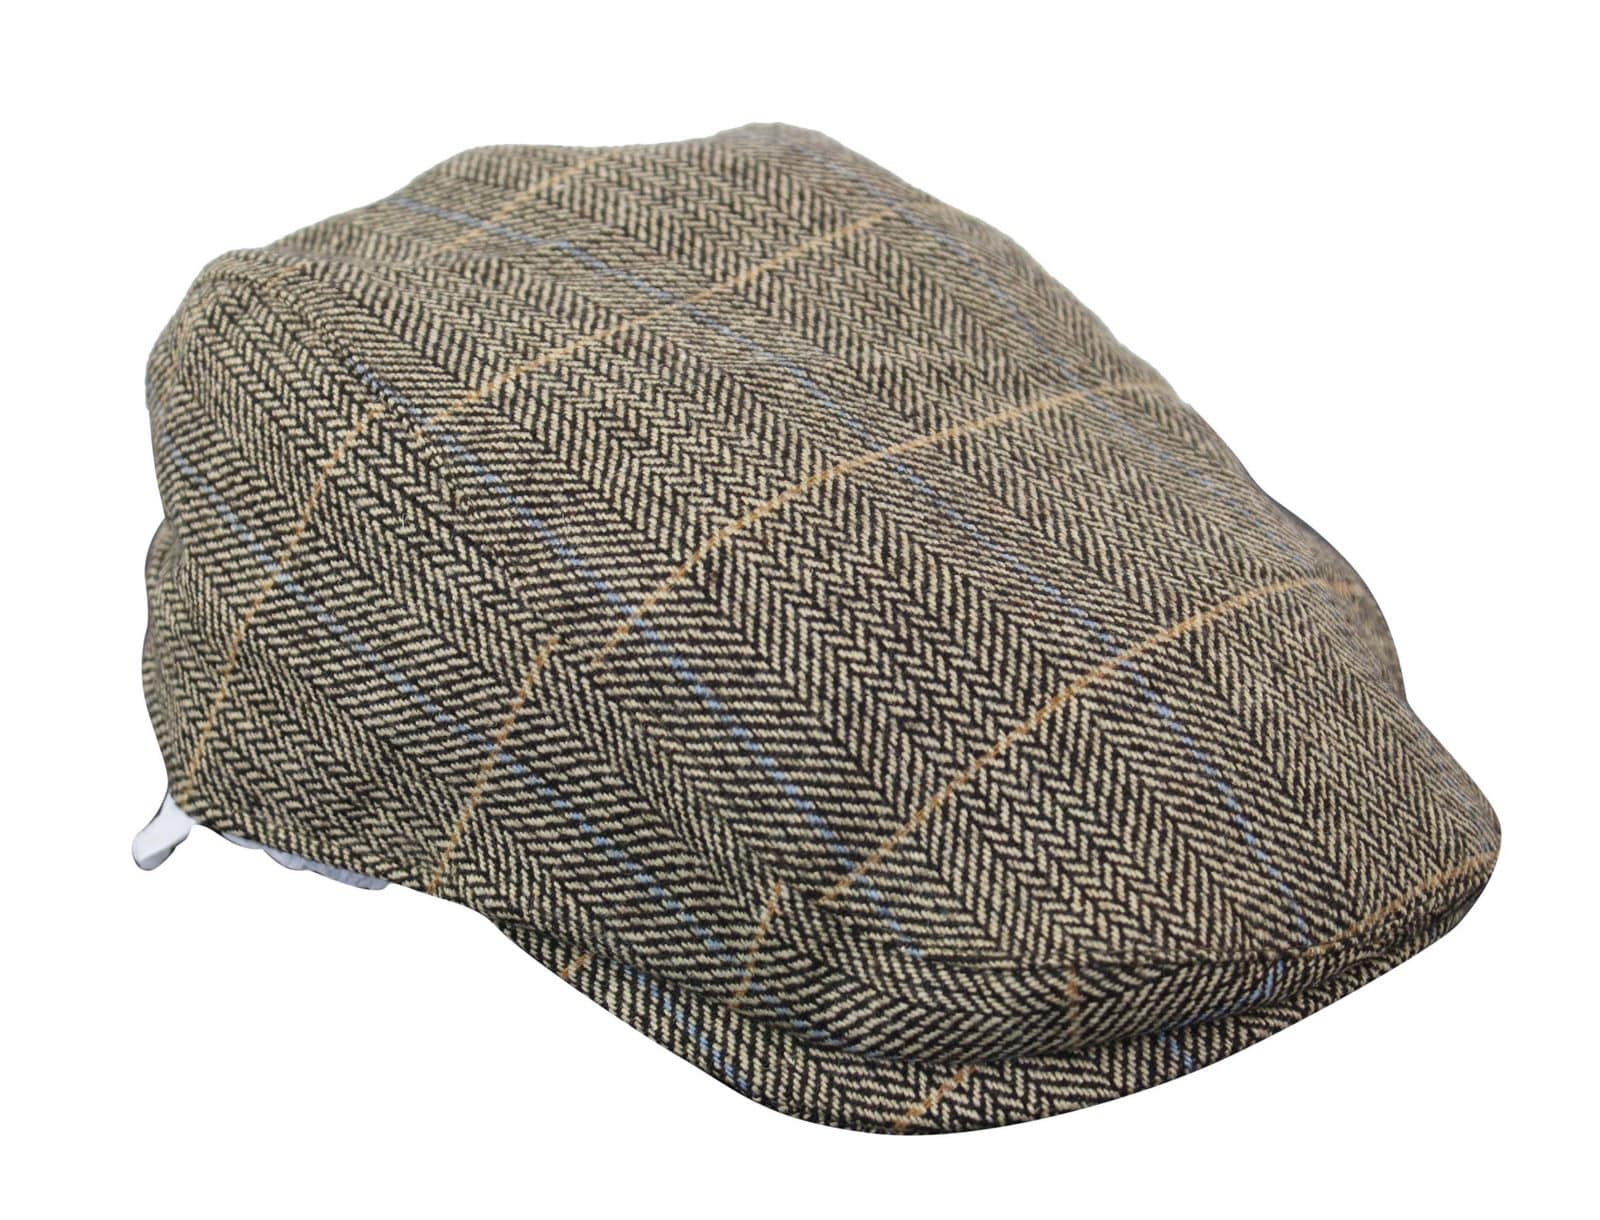 Cavani Albert Mens Tweed Flat Cap - Herringbone Tweed Wool Grandad Flat Hats  Vintage - Tan Brown/Charcoal Grey: Buy Online - Happy Gentleman United  States